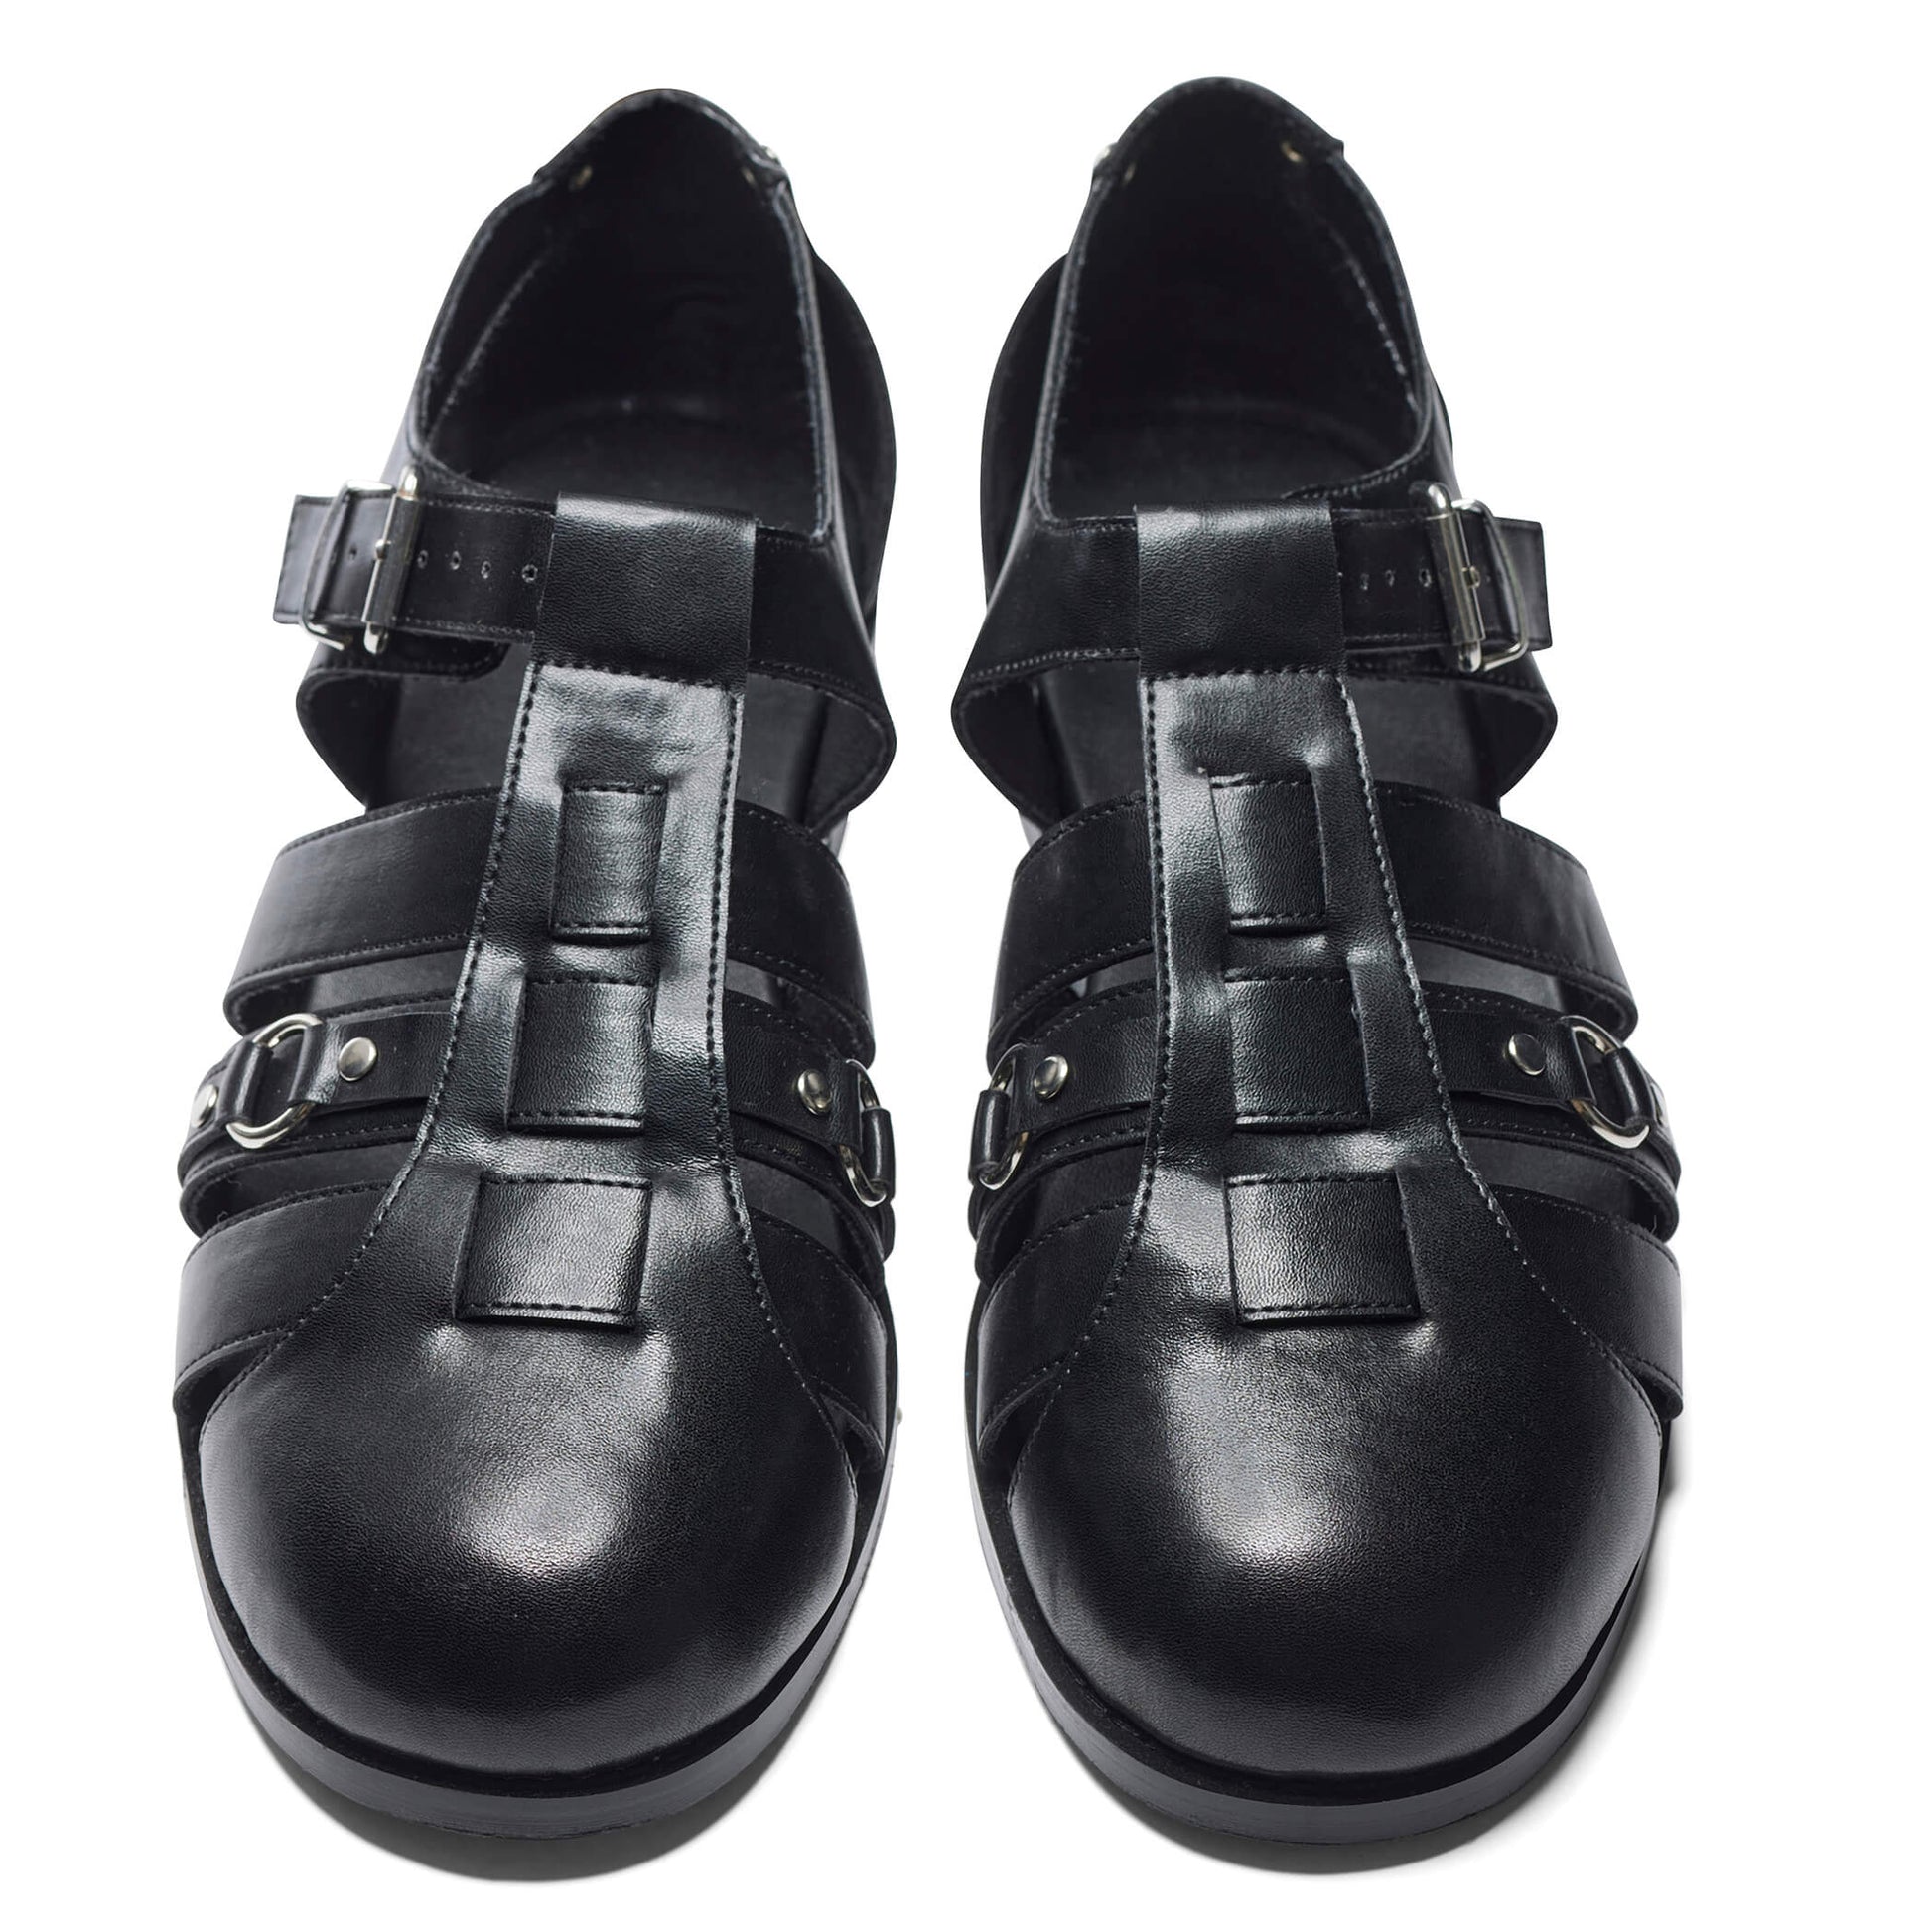 Gilgen Men's Cutout Shoes - KOI Footwear - Black - Front View